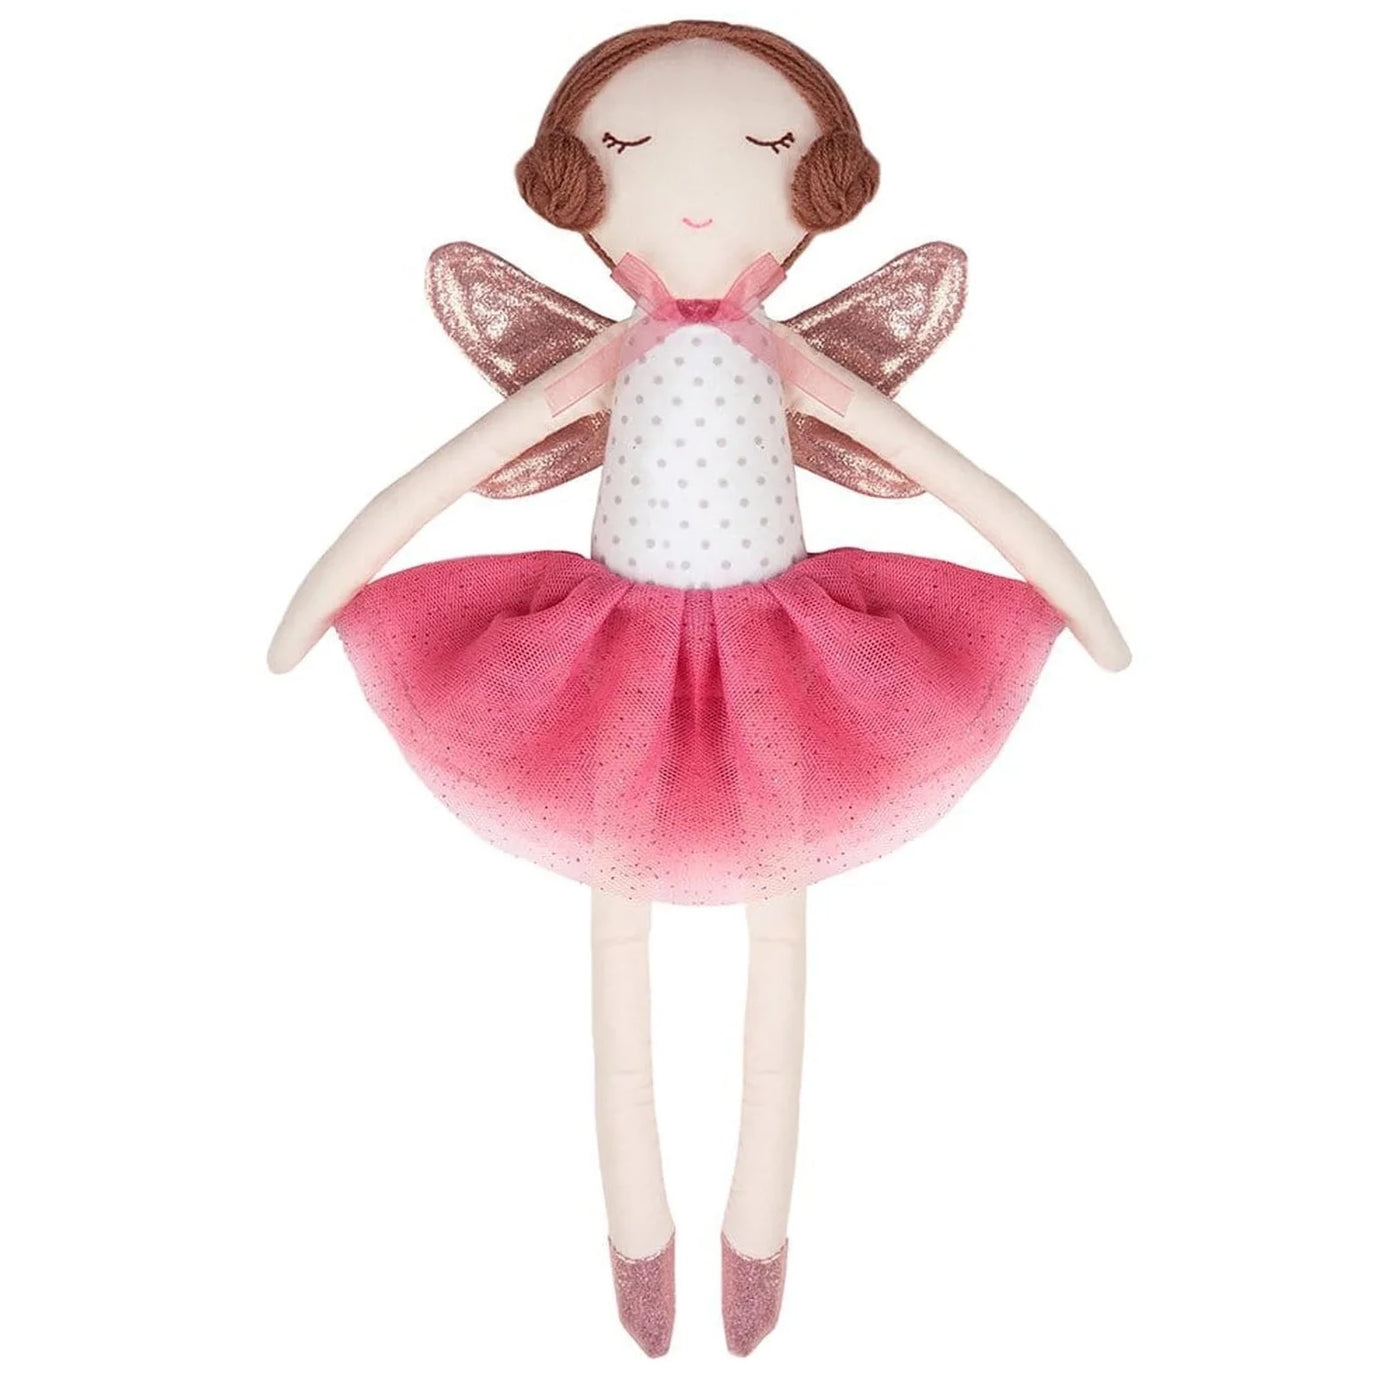 Sara the fairy doll